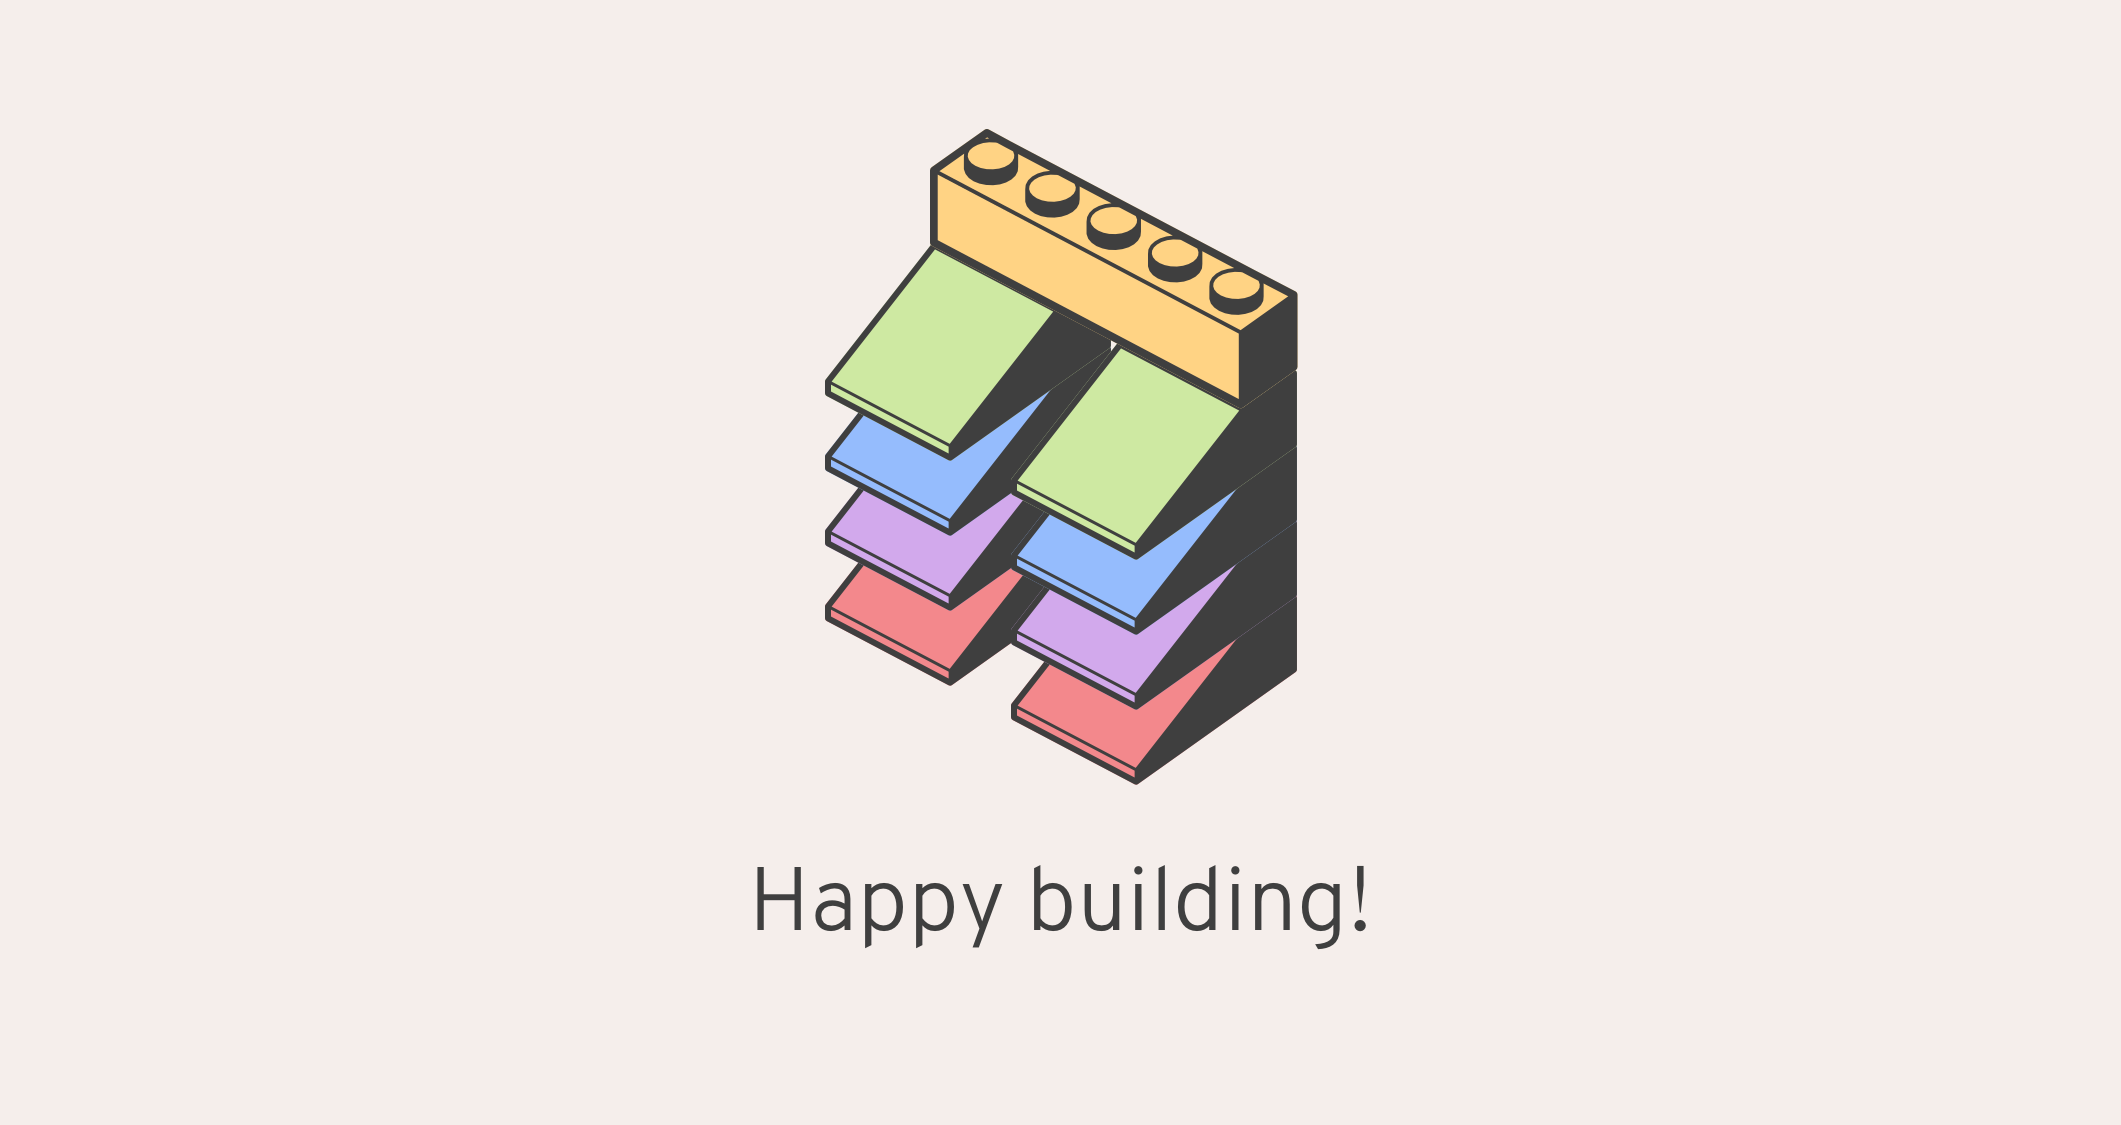 Happy building!